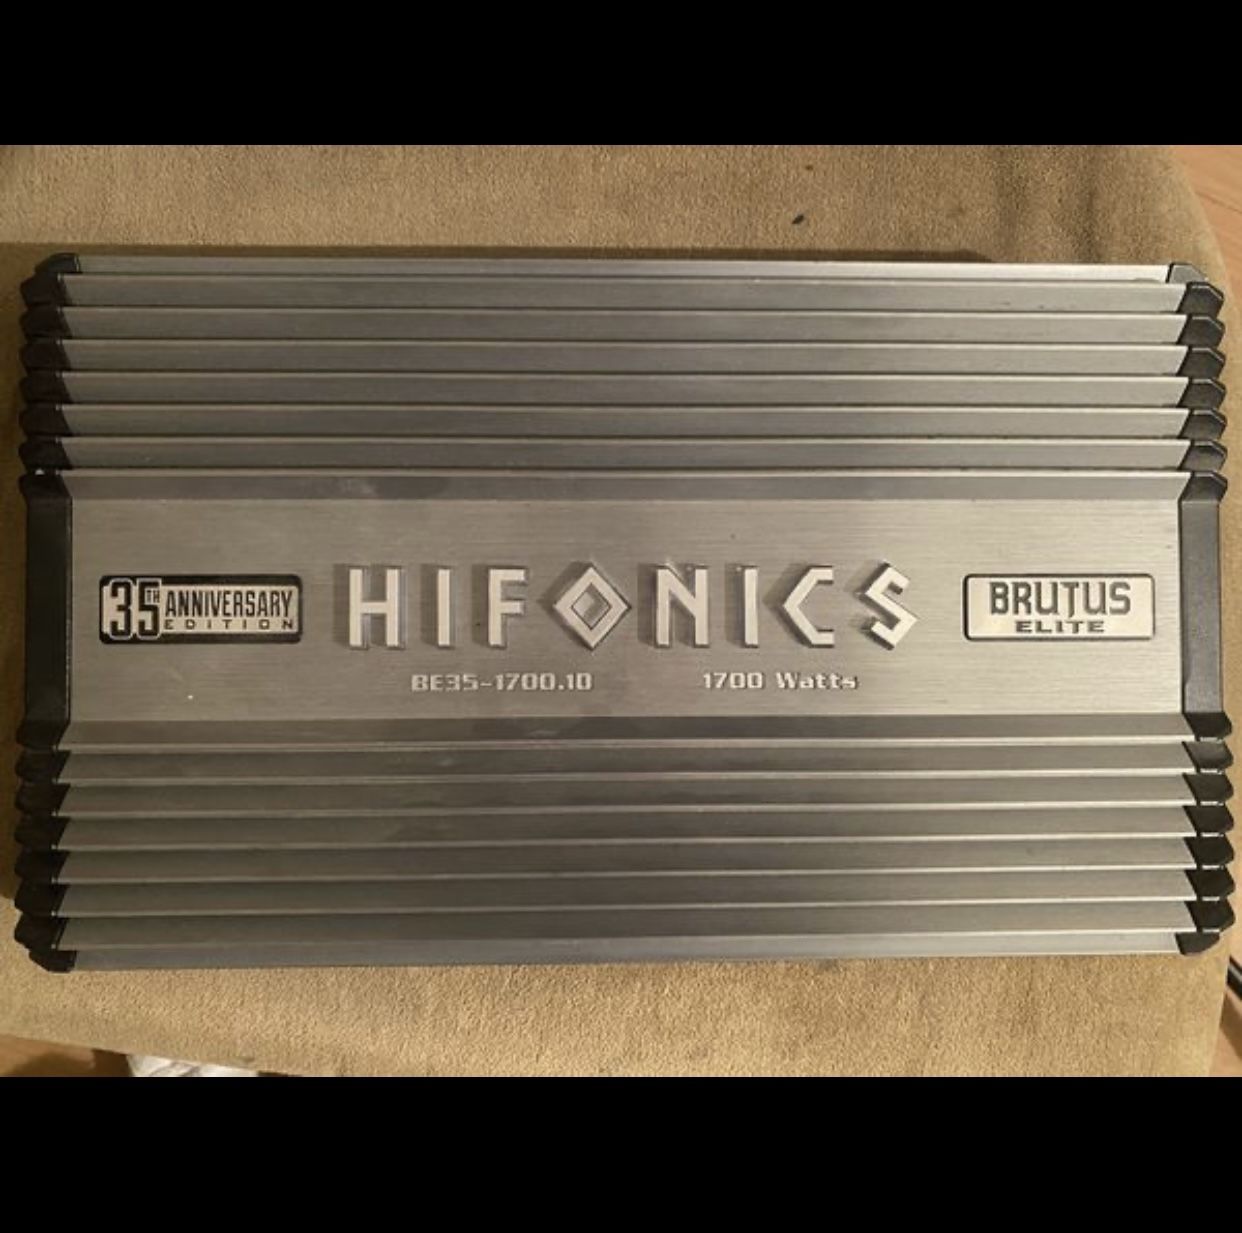 Hifonics Amps 35 year anniversary